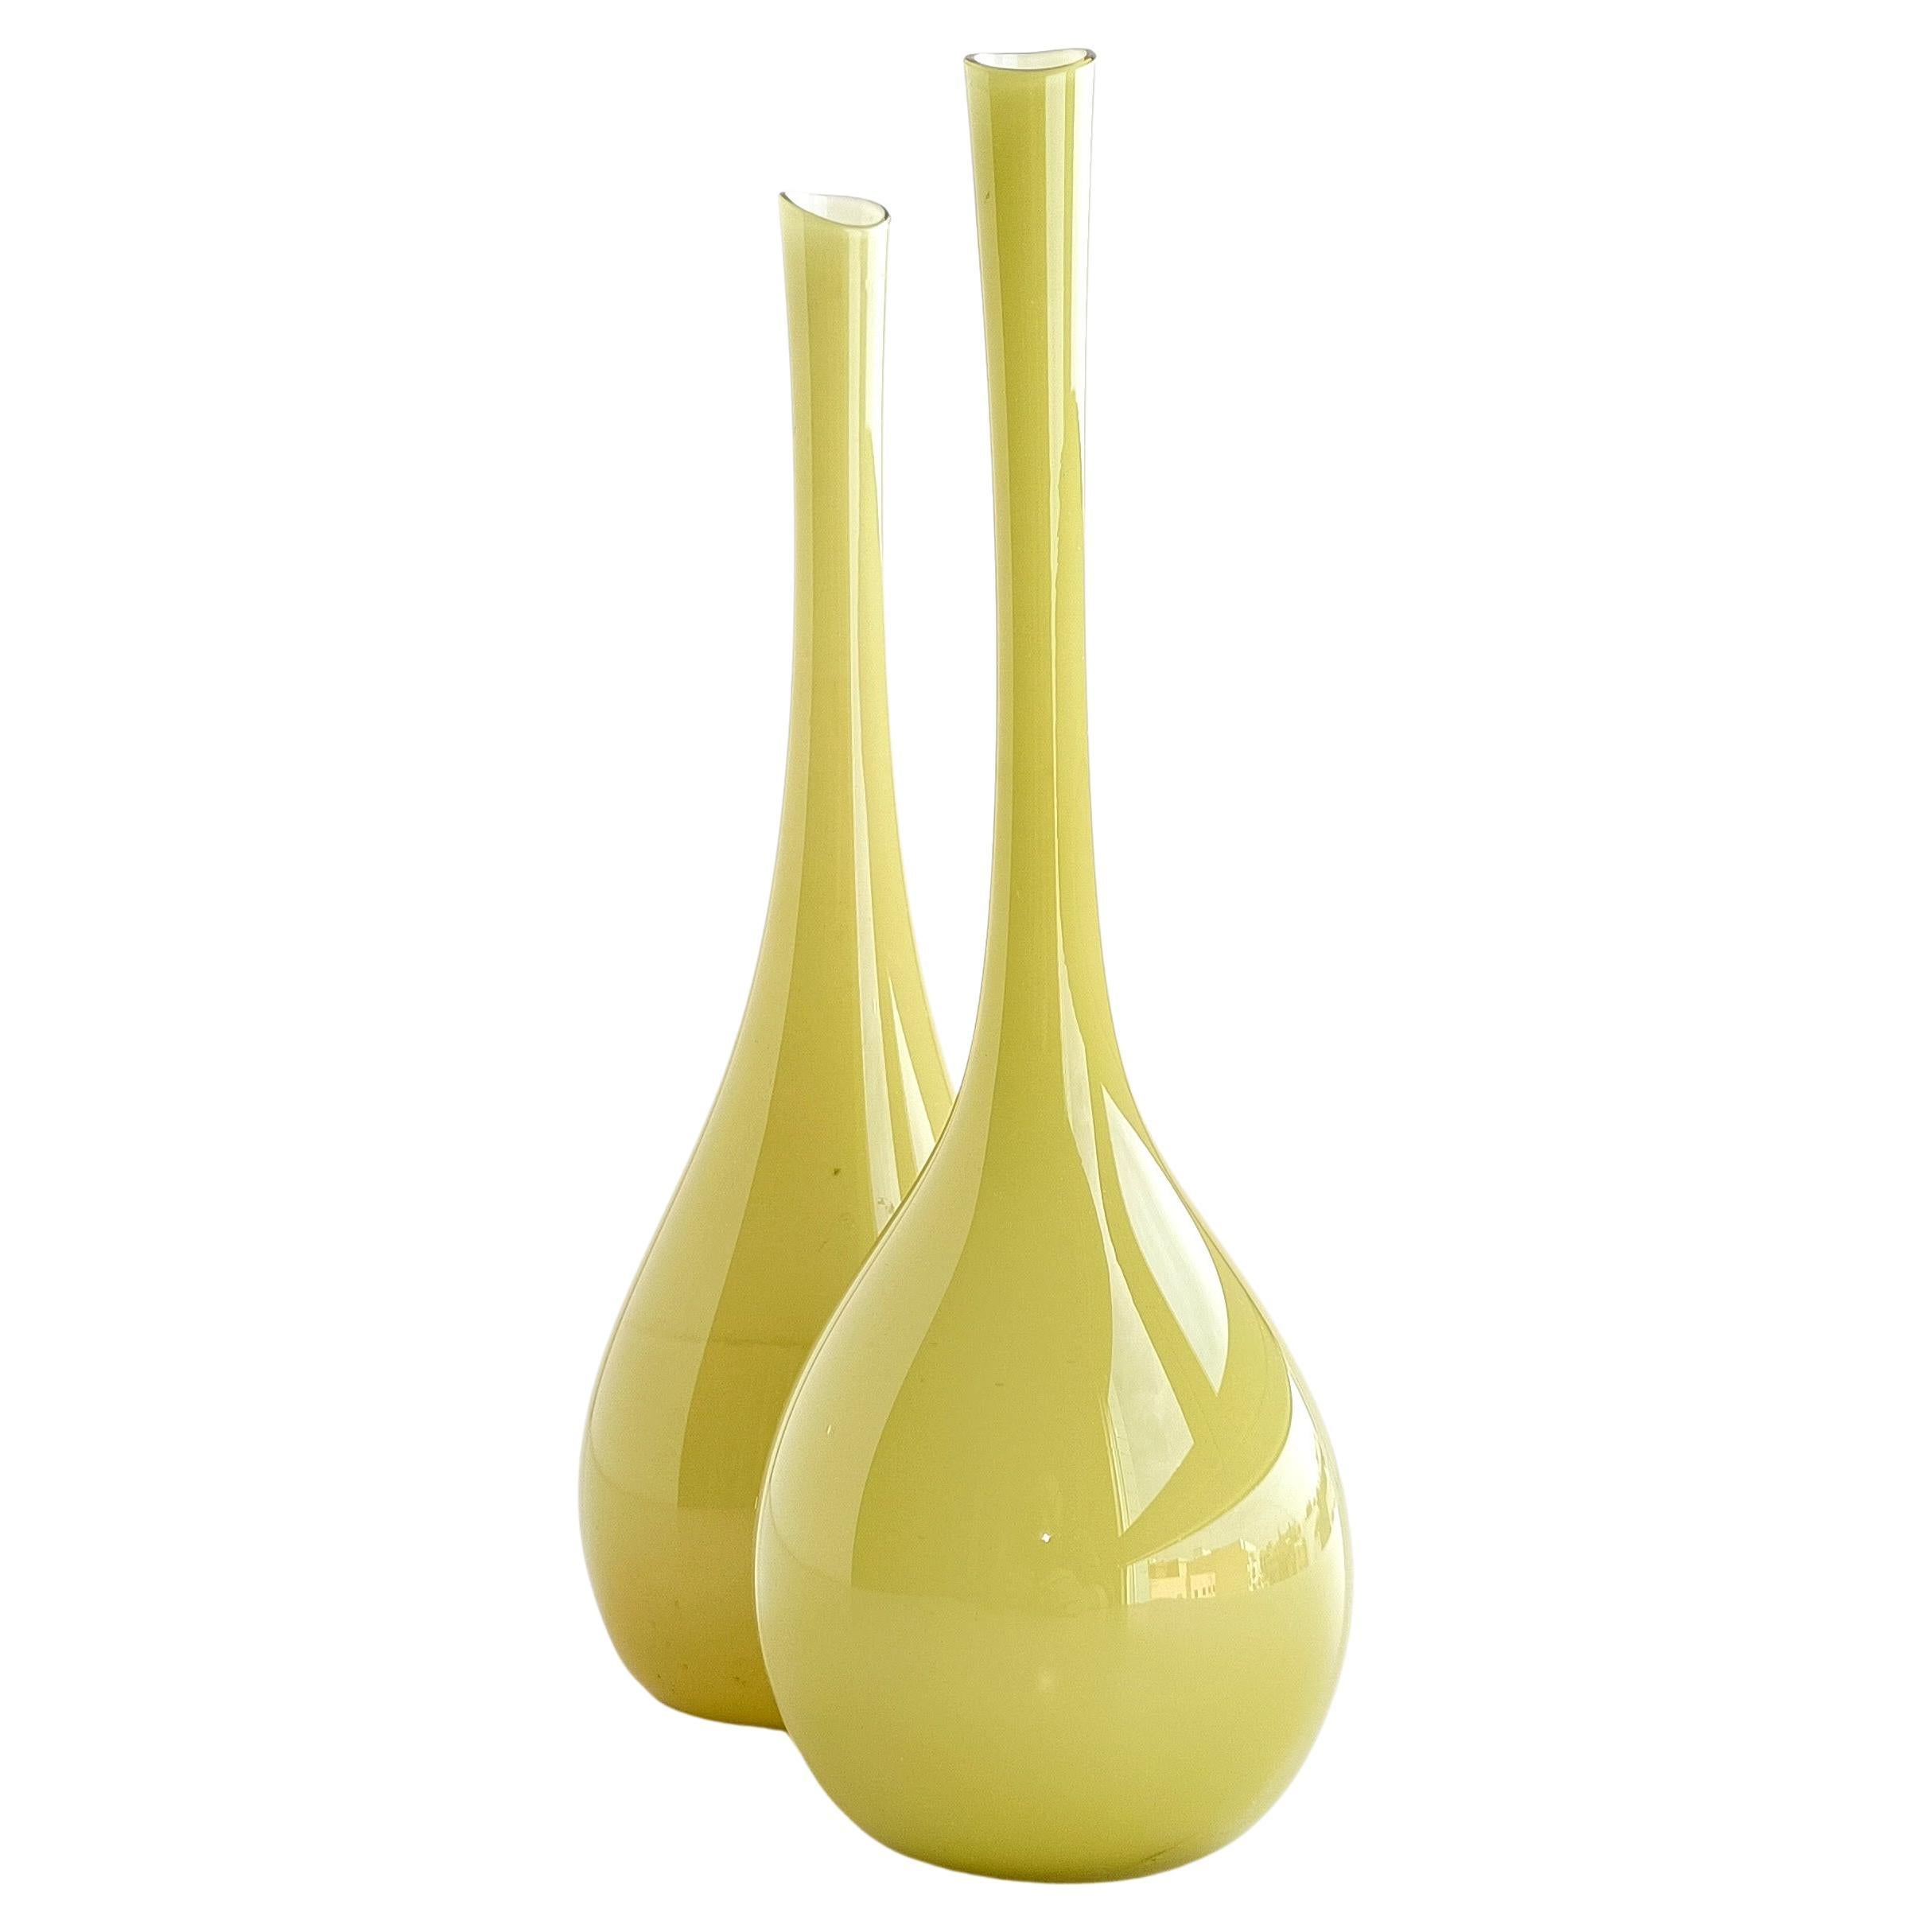 Ein Paar Vasen, entworfen von Gunnar Ander für Lindshamar Glassbruk, um die 1950er Jahre.

Sie haben eine äußere Schicht aus blassem pistazienfarbenem Glas mit einem extra dünnen weißen Mantel. Sehr leicht und zart - exquisit verfeinerte seltene